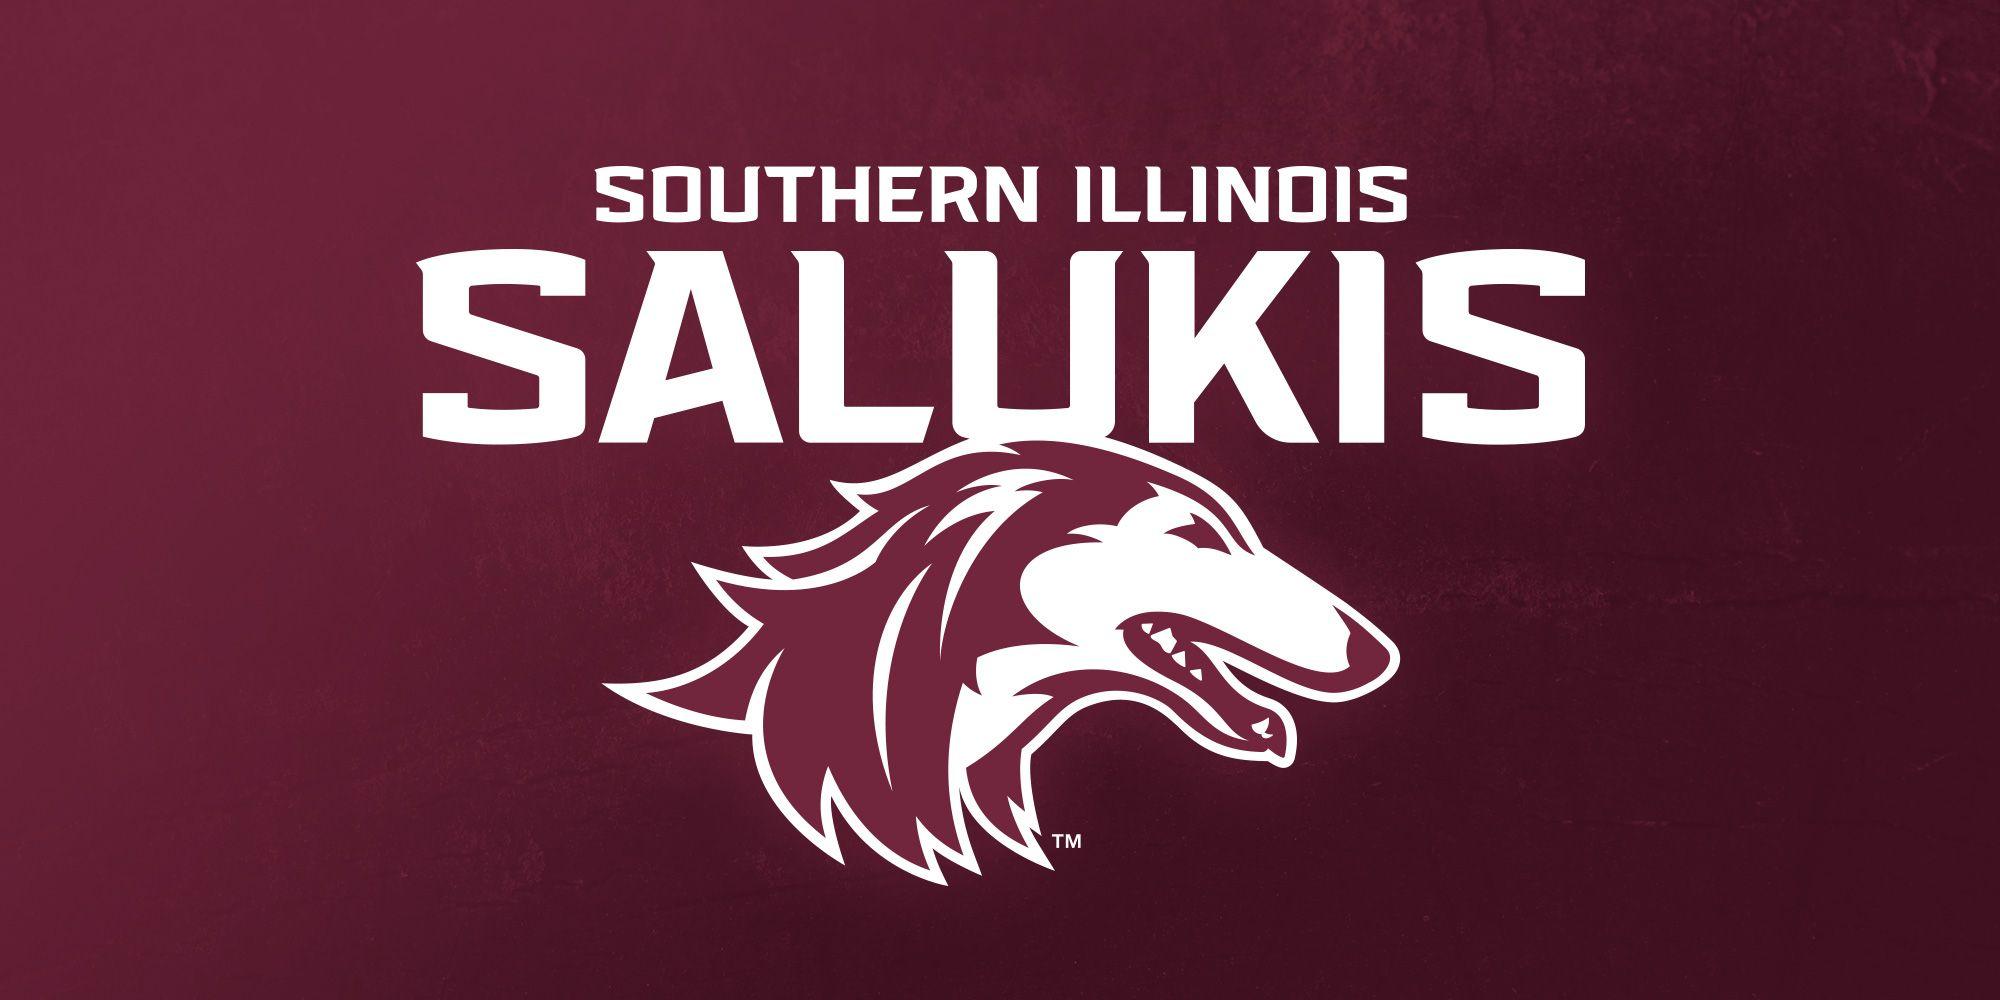 SIUC Logo - Saluki Athletics unveils new logo - Southern Illinois University ...